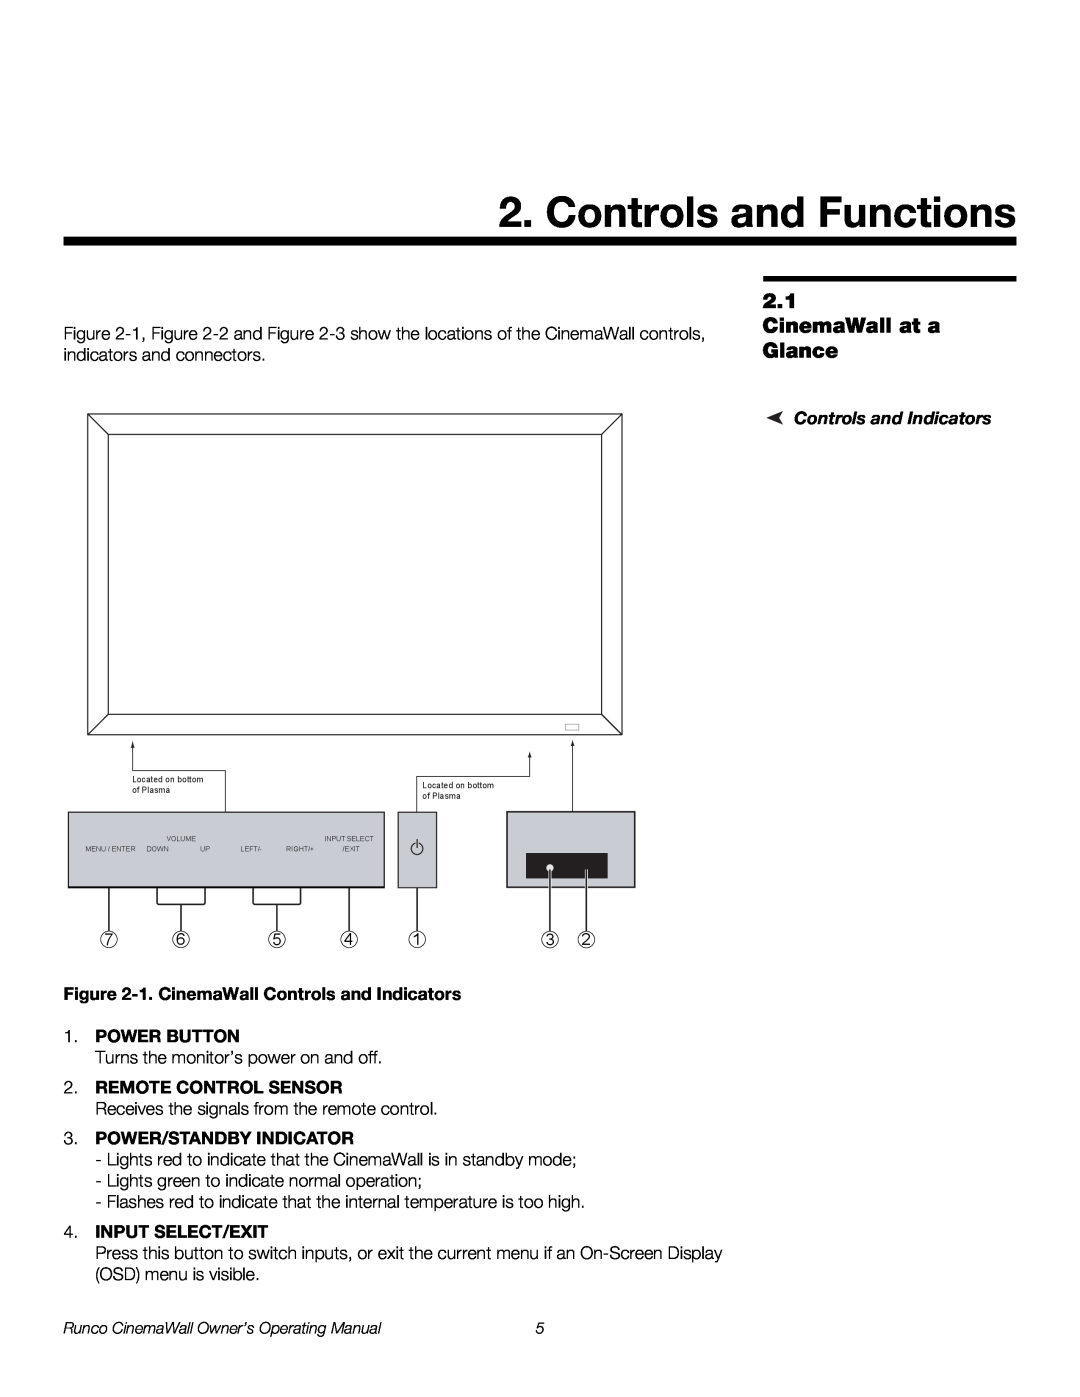 Runco CW-50XA, CW-61 manual Controls and Functions, CinemaWall at a Glance, Controls and Indicators, Remote Control Sensor 